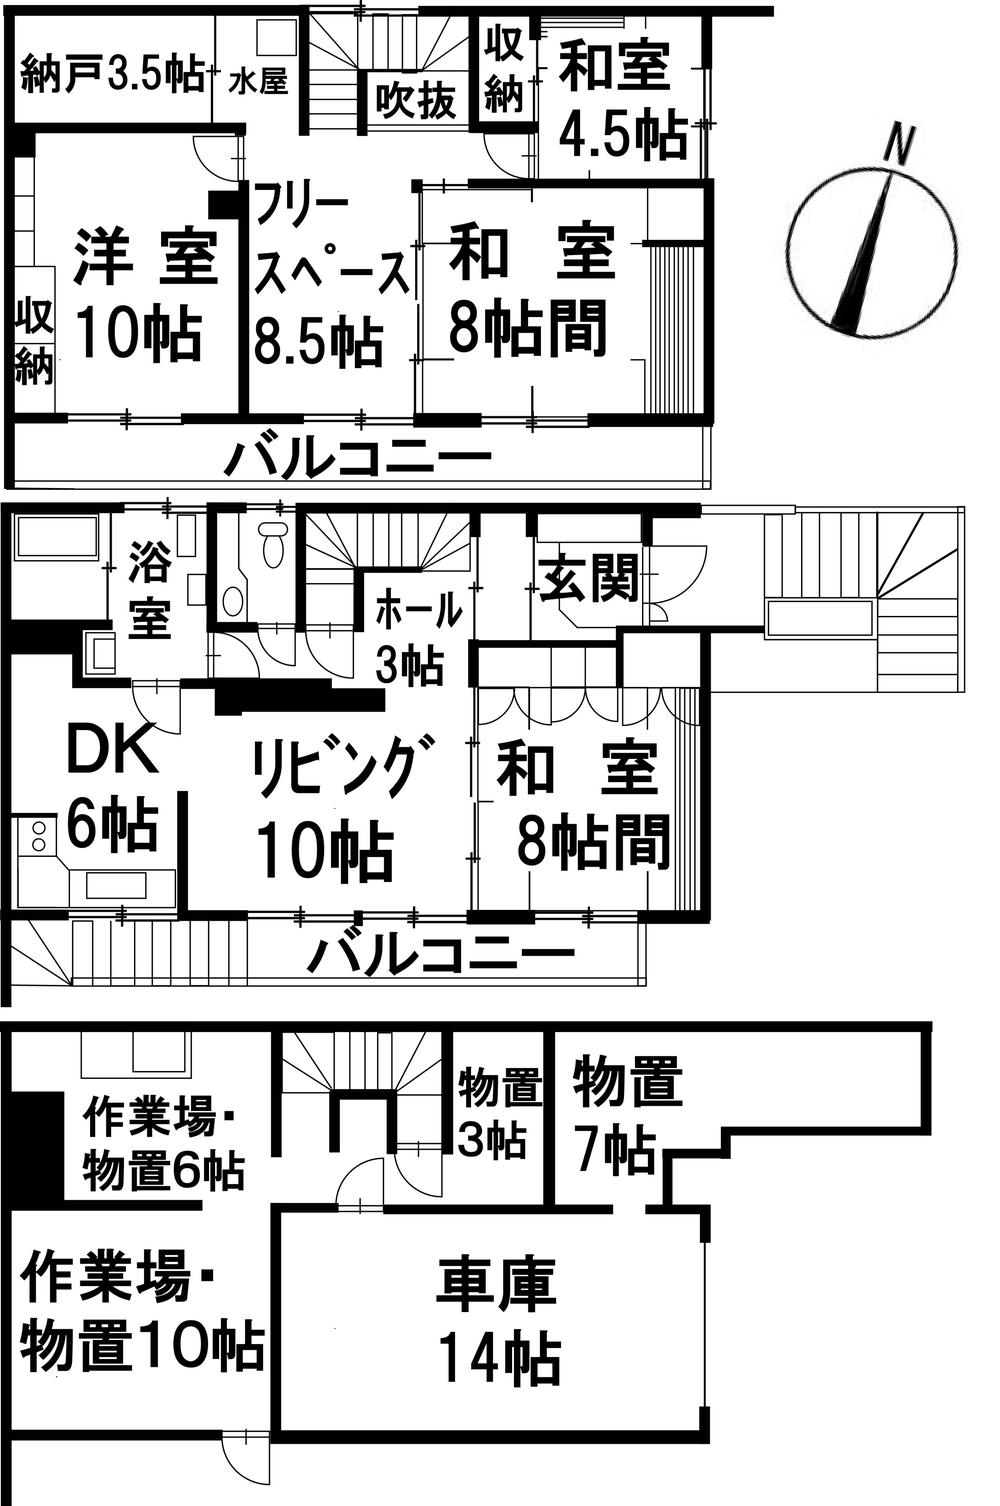 Floor plan. 14.9 million yen, 4LDK, Land area 606 sq m , Building area 195.42 sq m site (August 2012) shooting